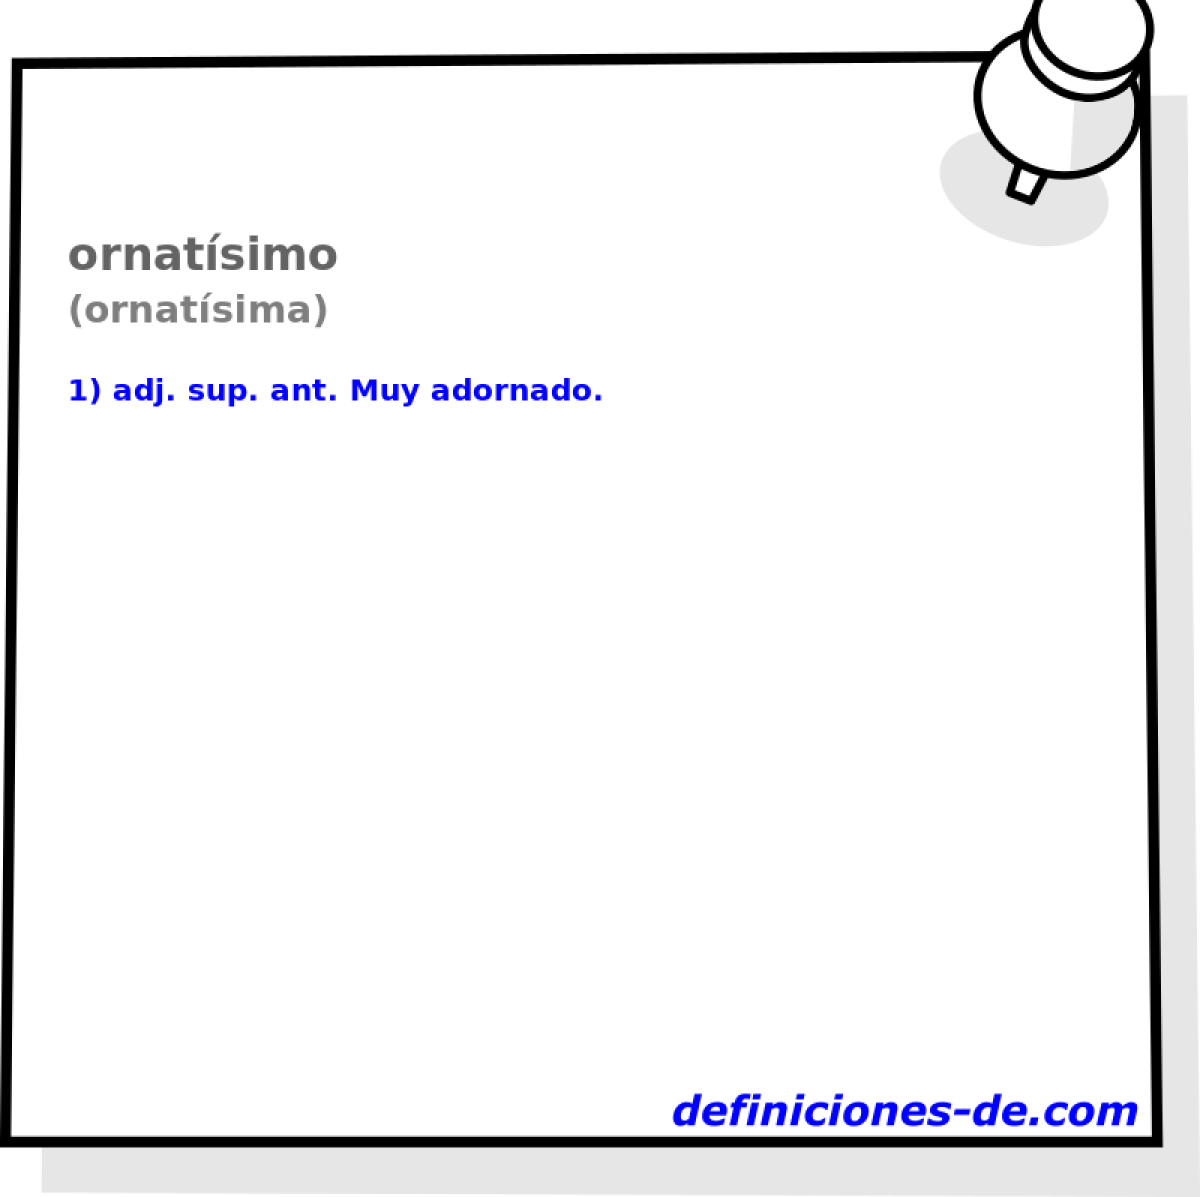 ornatsimo (ornatsima)